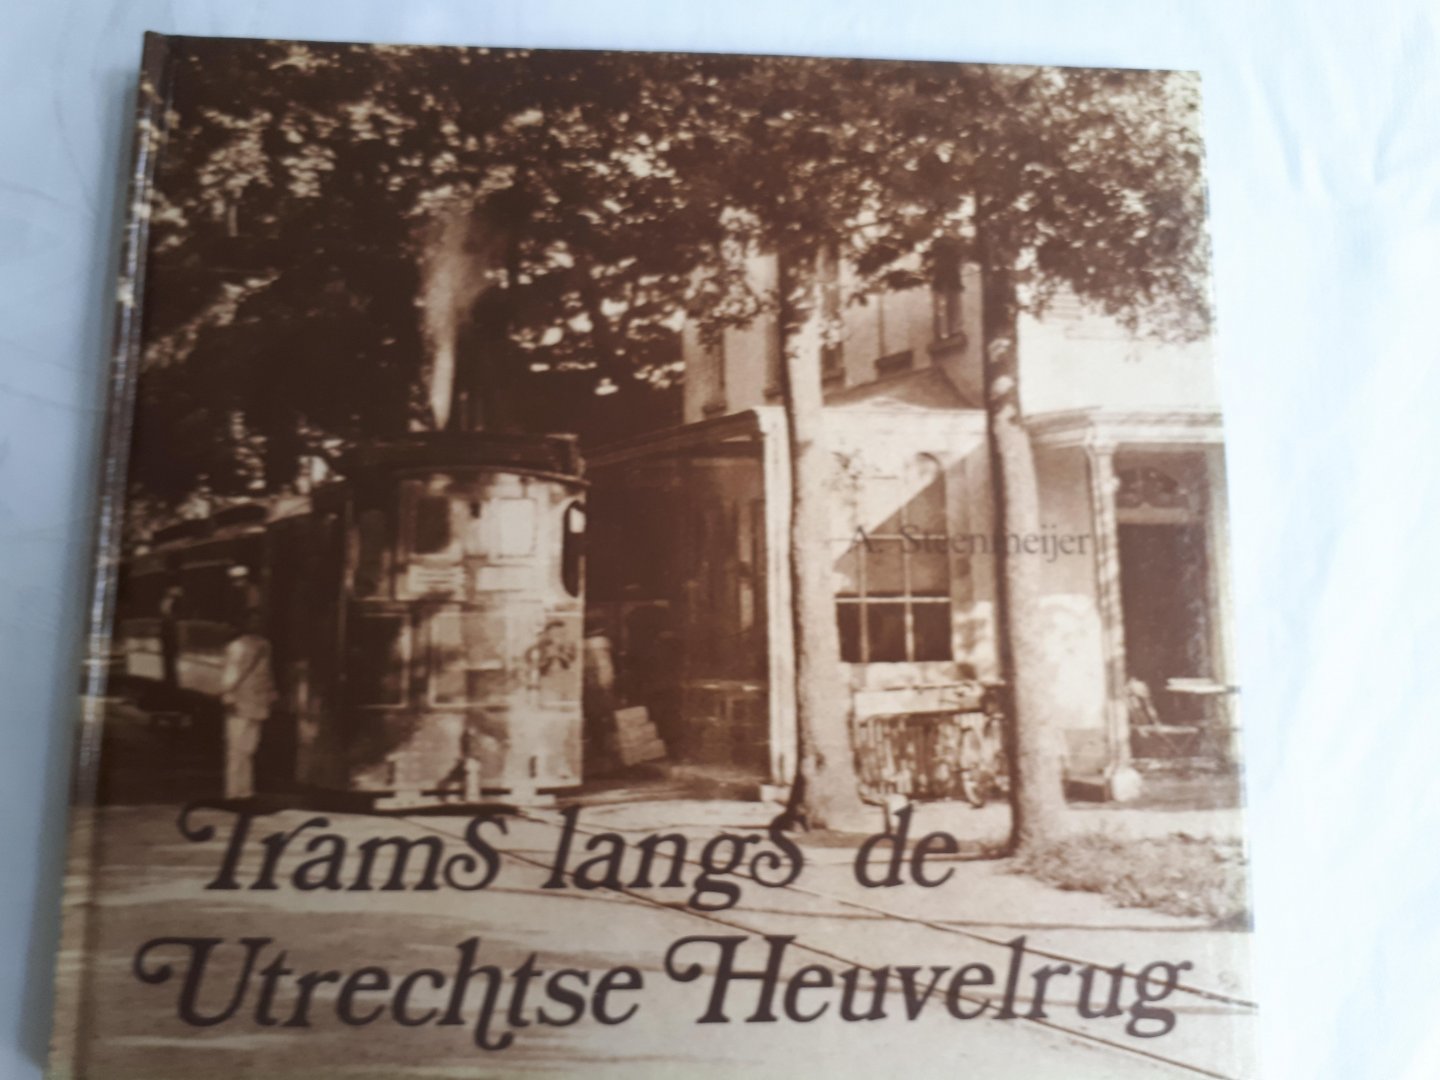 Steenmeijer, A. - Trams langs de Utrechtse Heuvelrug. De tramlijn Amersfoort-Zeist-Rhenen-Arnhem alsmede de zijlijn Doorn- Wijk bij Duurstede 1882 - 1949